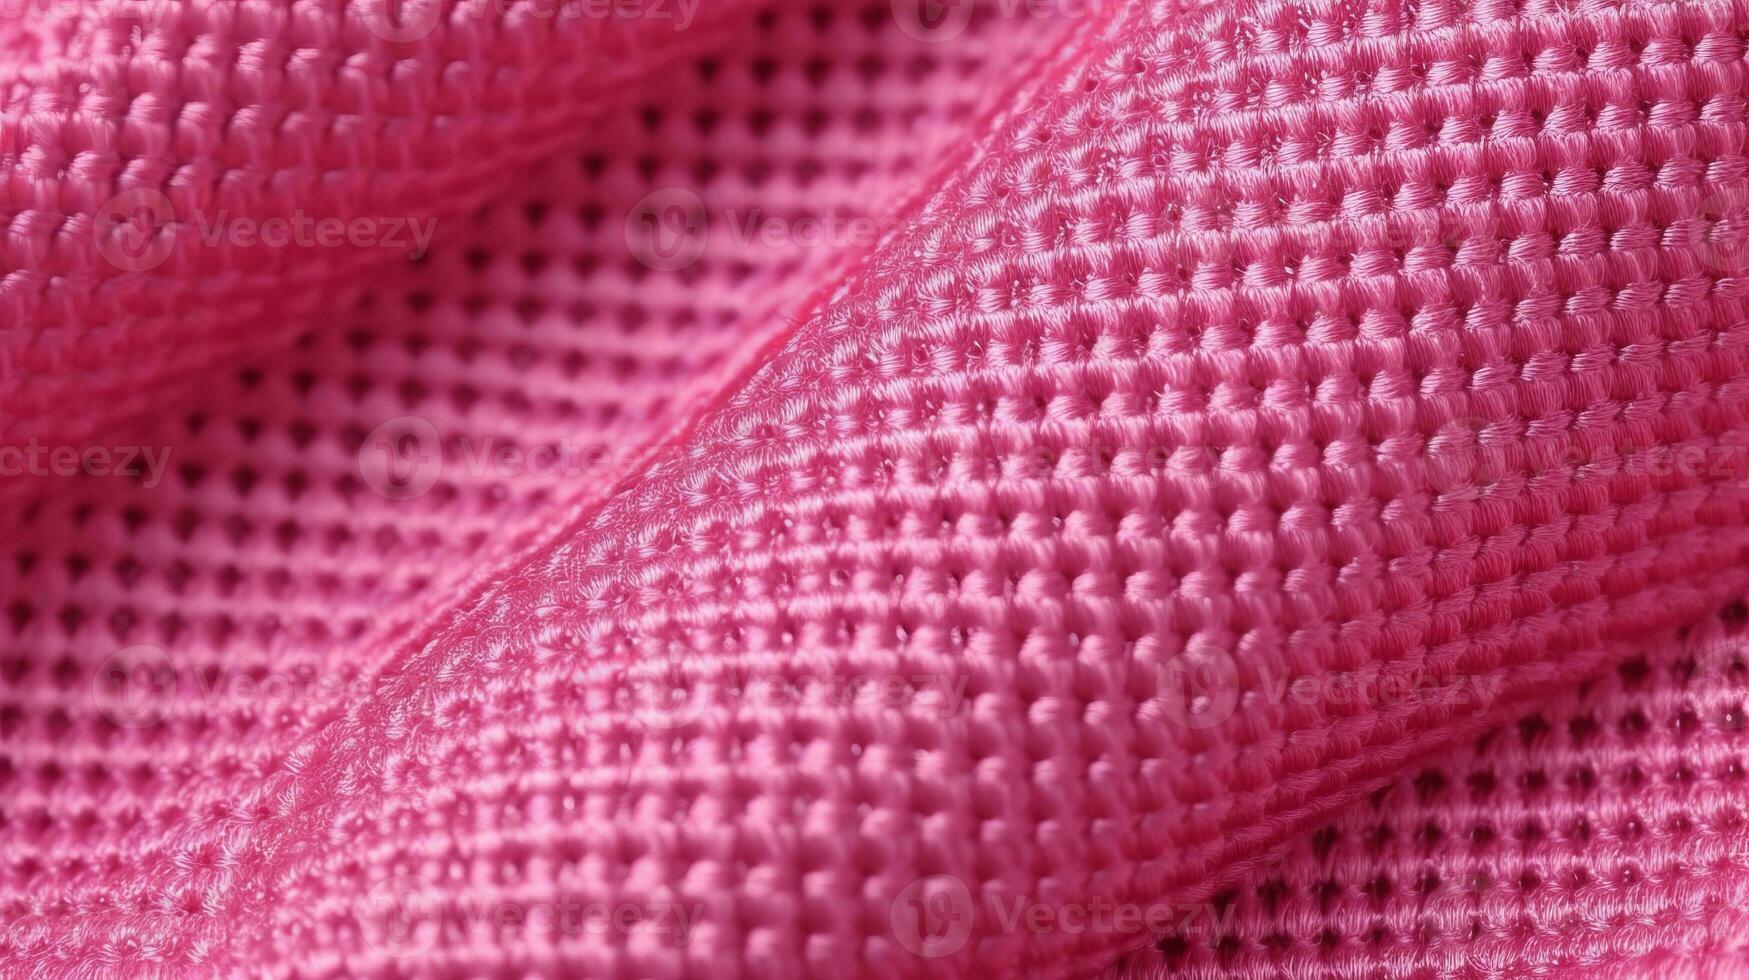 rosado fútbol tela textura con aire malla. atlético vestir fondo foto